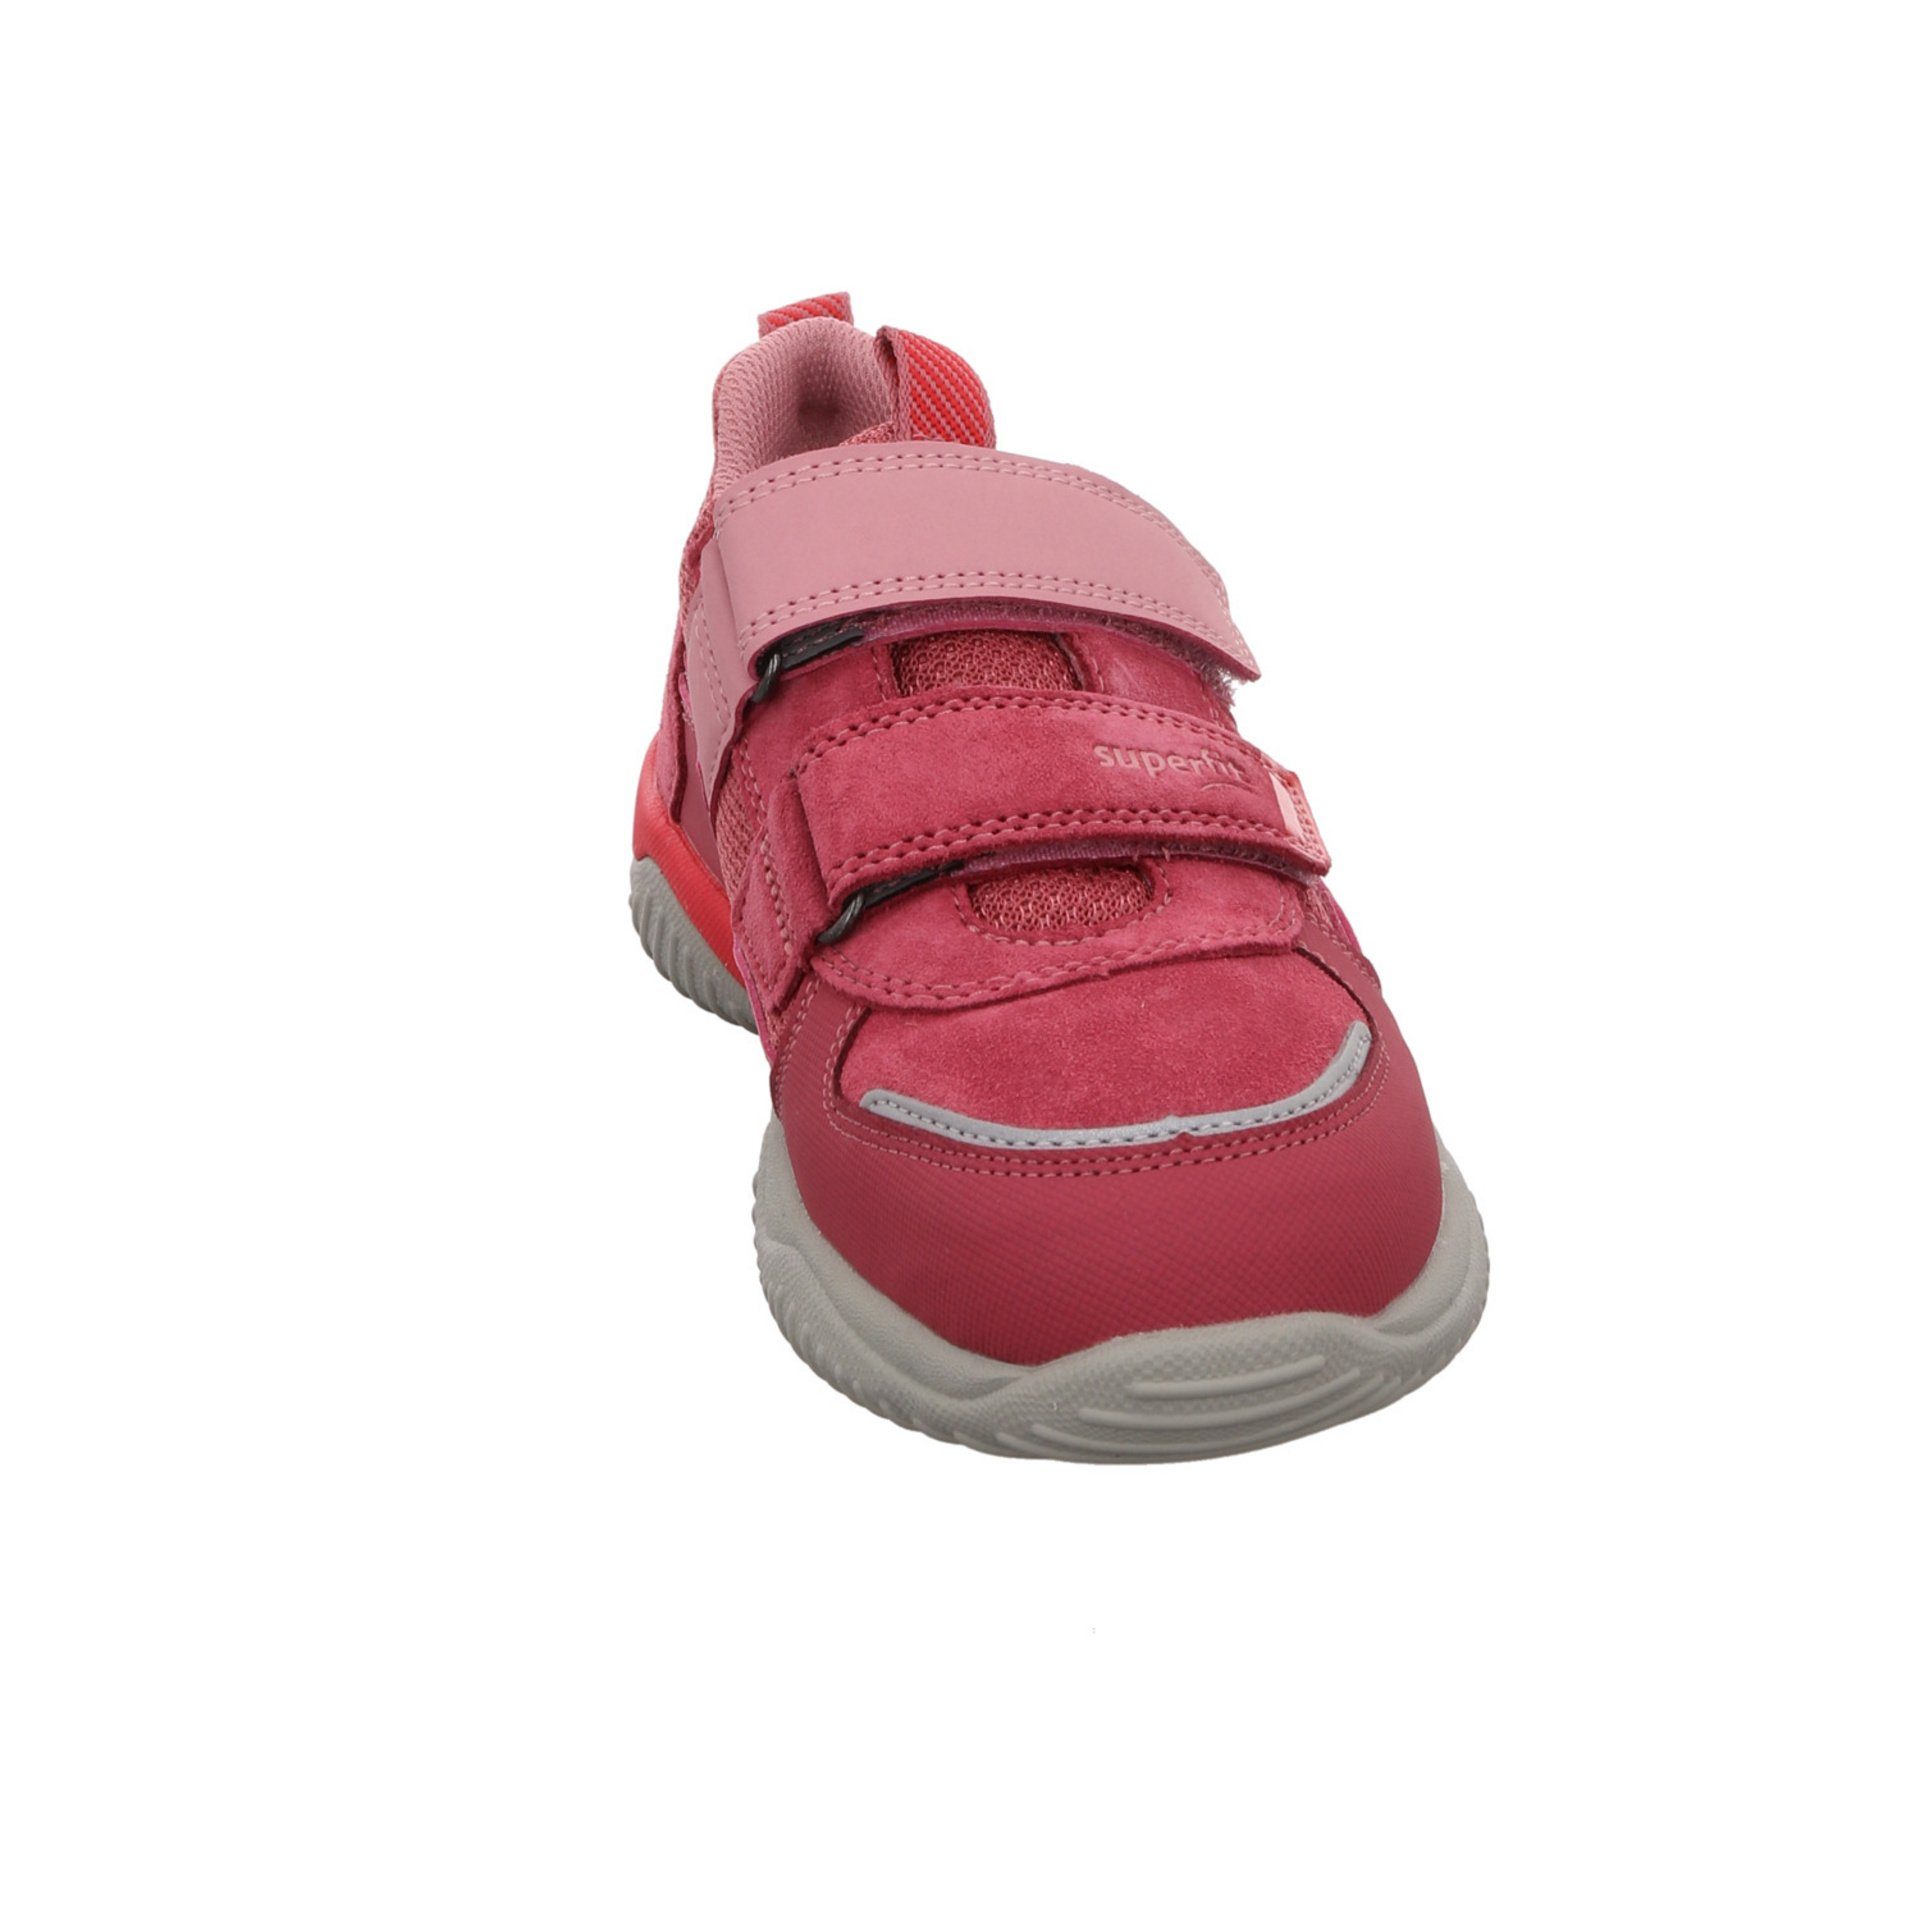 Superfit Jungen Schnürhalbschuhe Leder-/Textilkombination rot Klettschuh Storm pink Schnürschuh